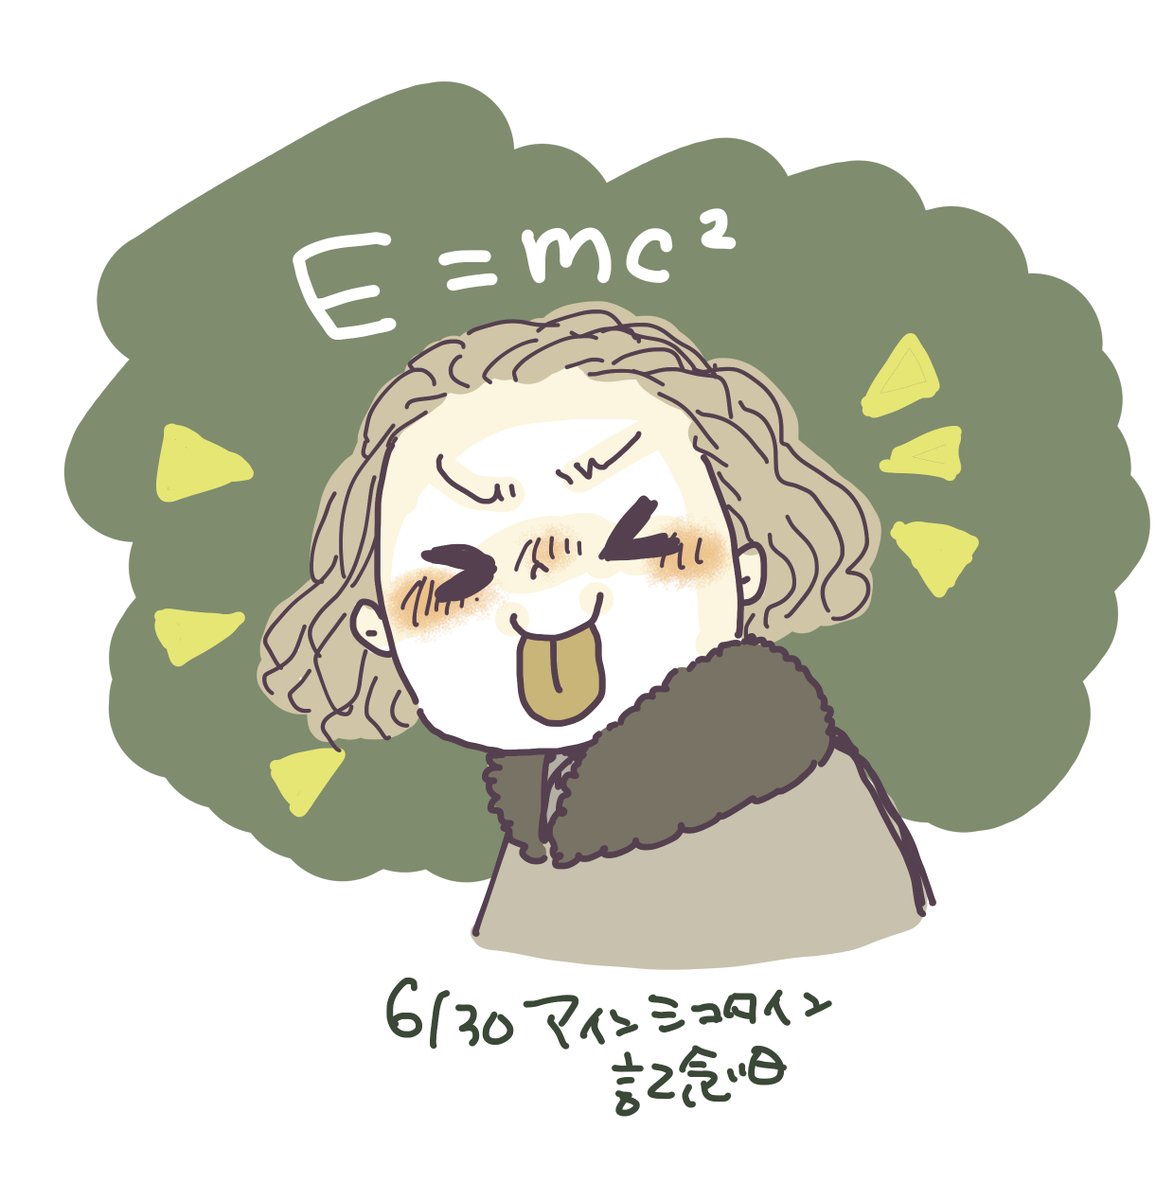 「アインシュタイン記念日、おはよ☀

今日はアインシュタインが相対性理論の最初の論」|明@Mingのイラスト